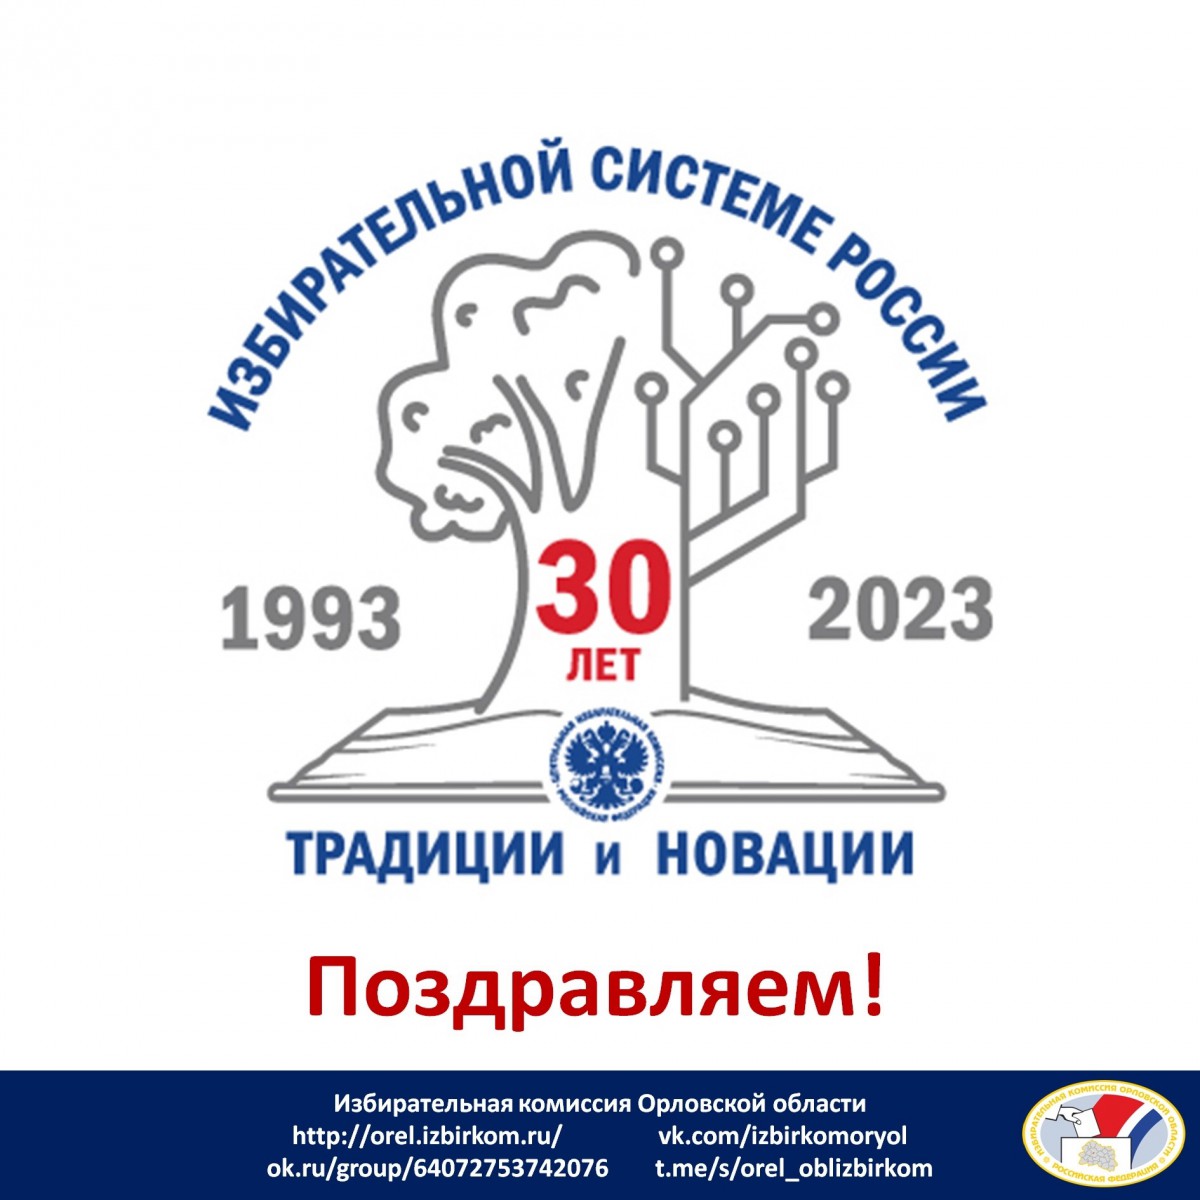 Избирательной системе России - 30 лет